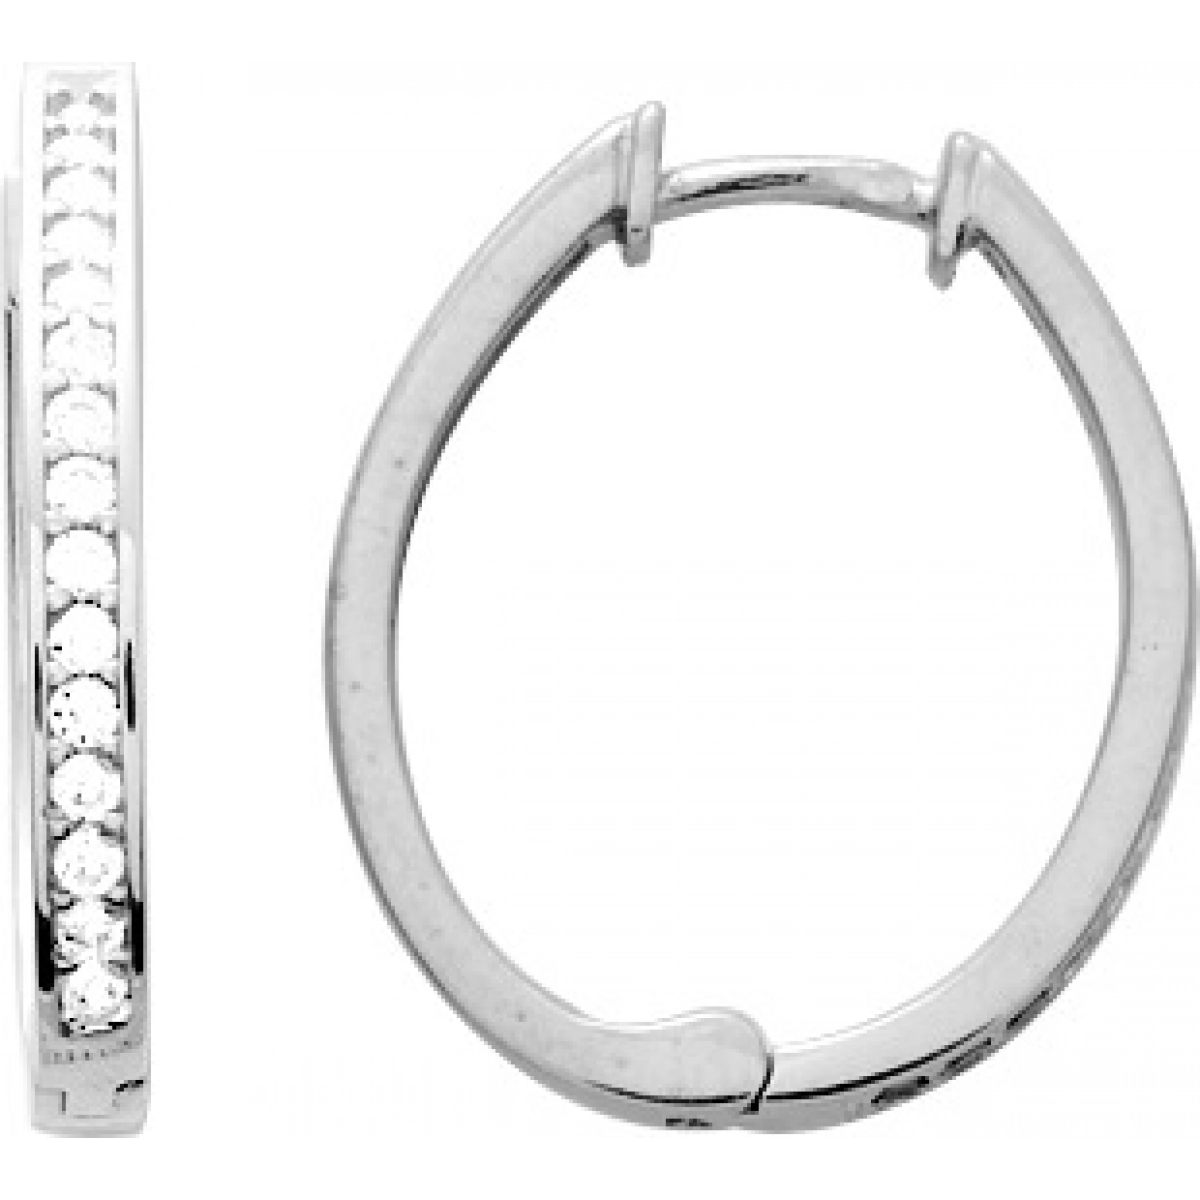 Hoops earrings pair w. cz rh925 Silver  Lua Blanca  305559.1.0